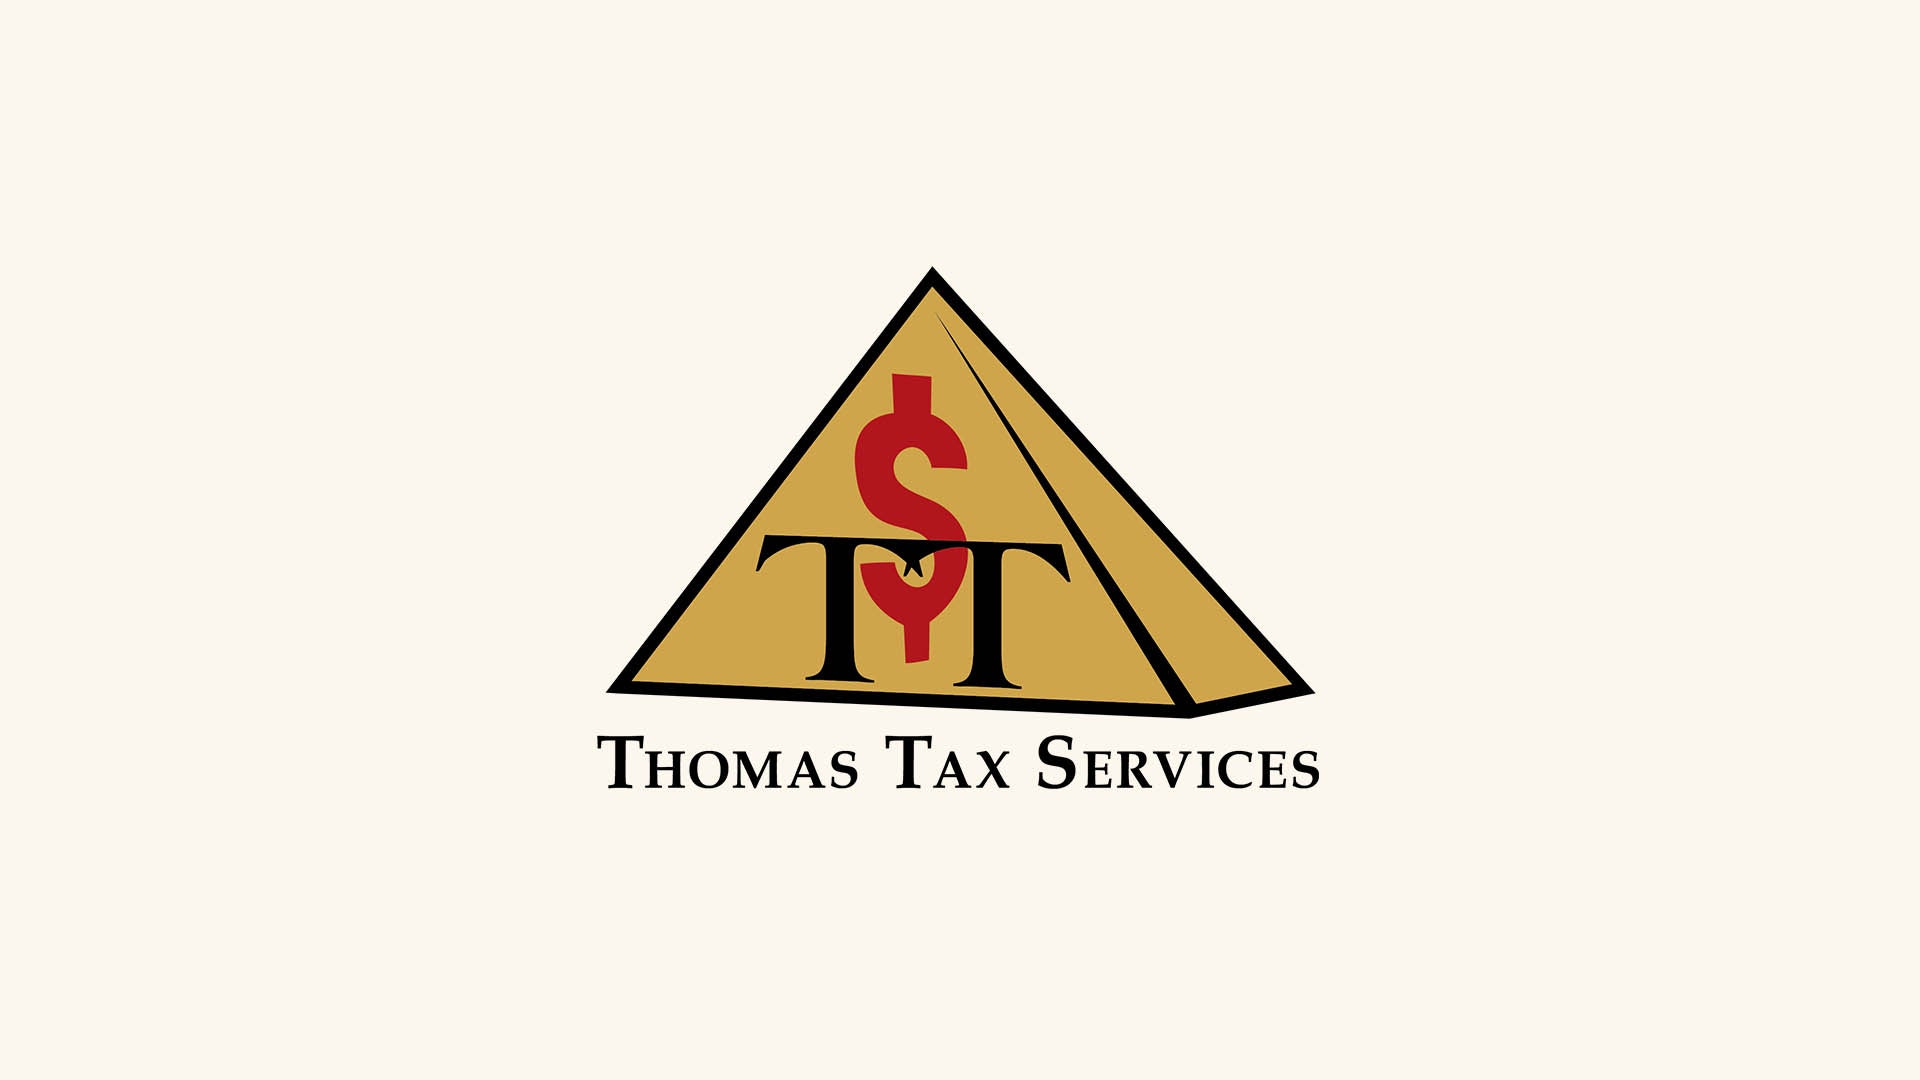 Thomas Tax Services